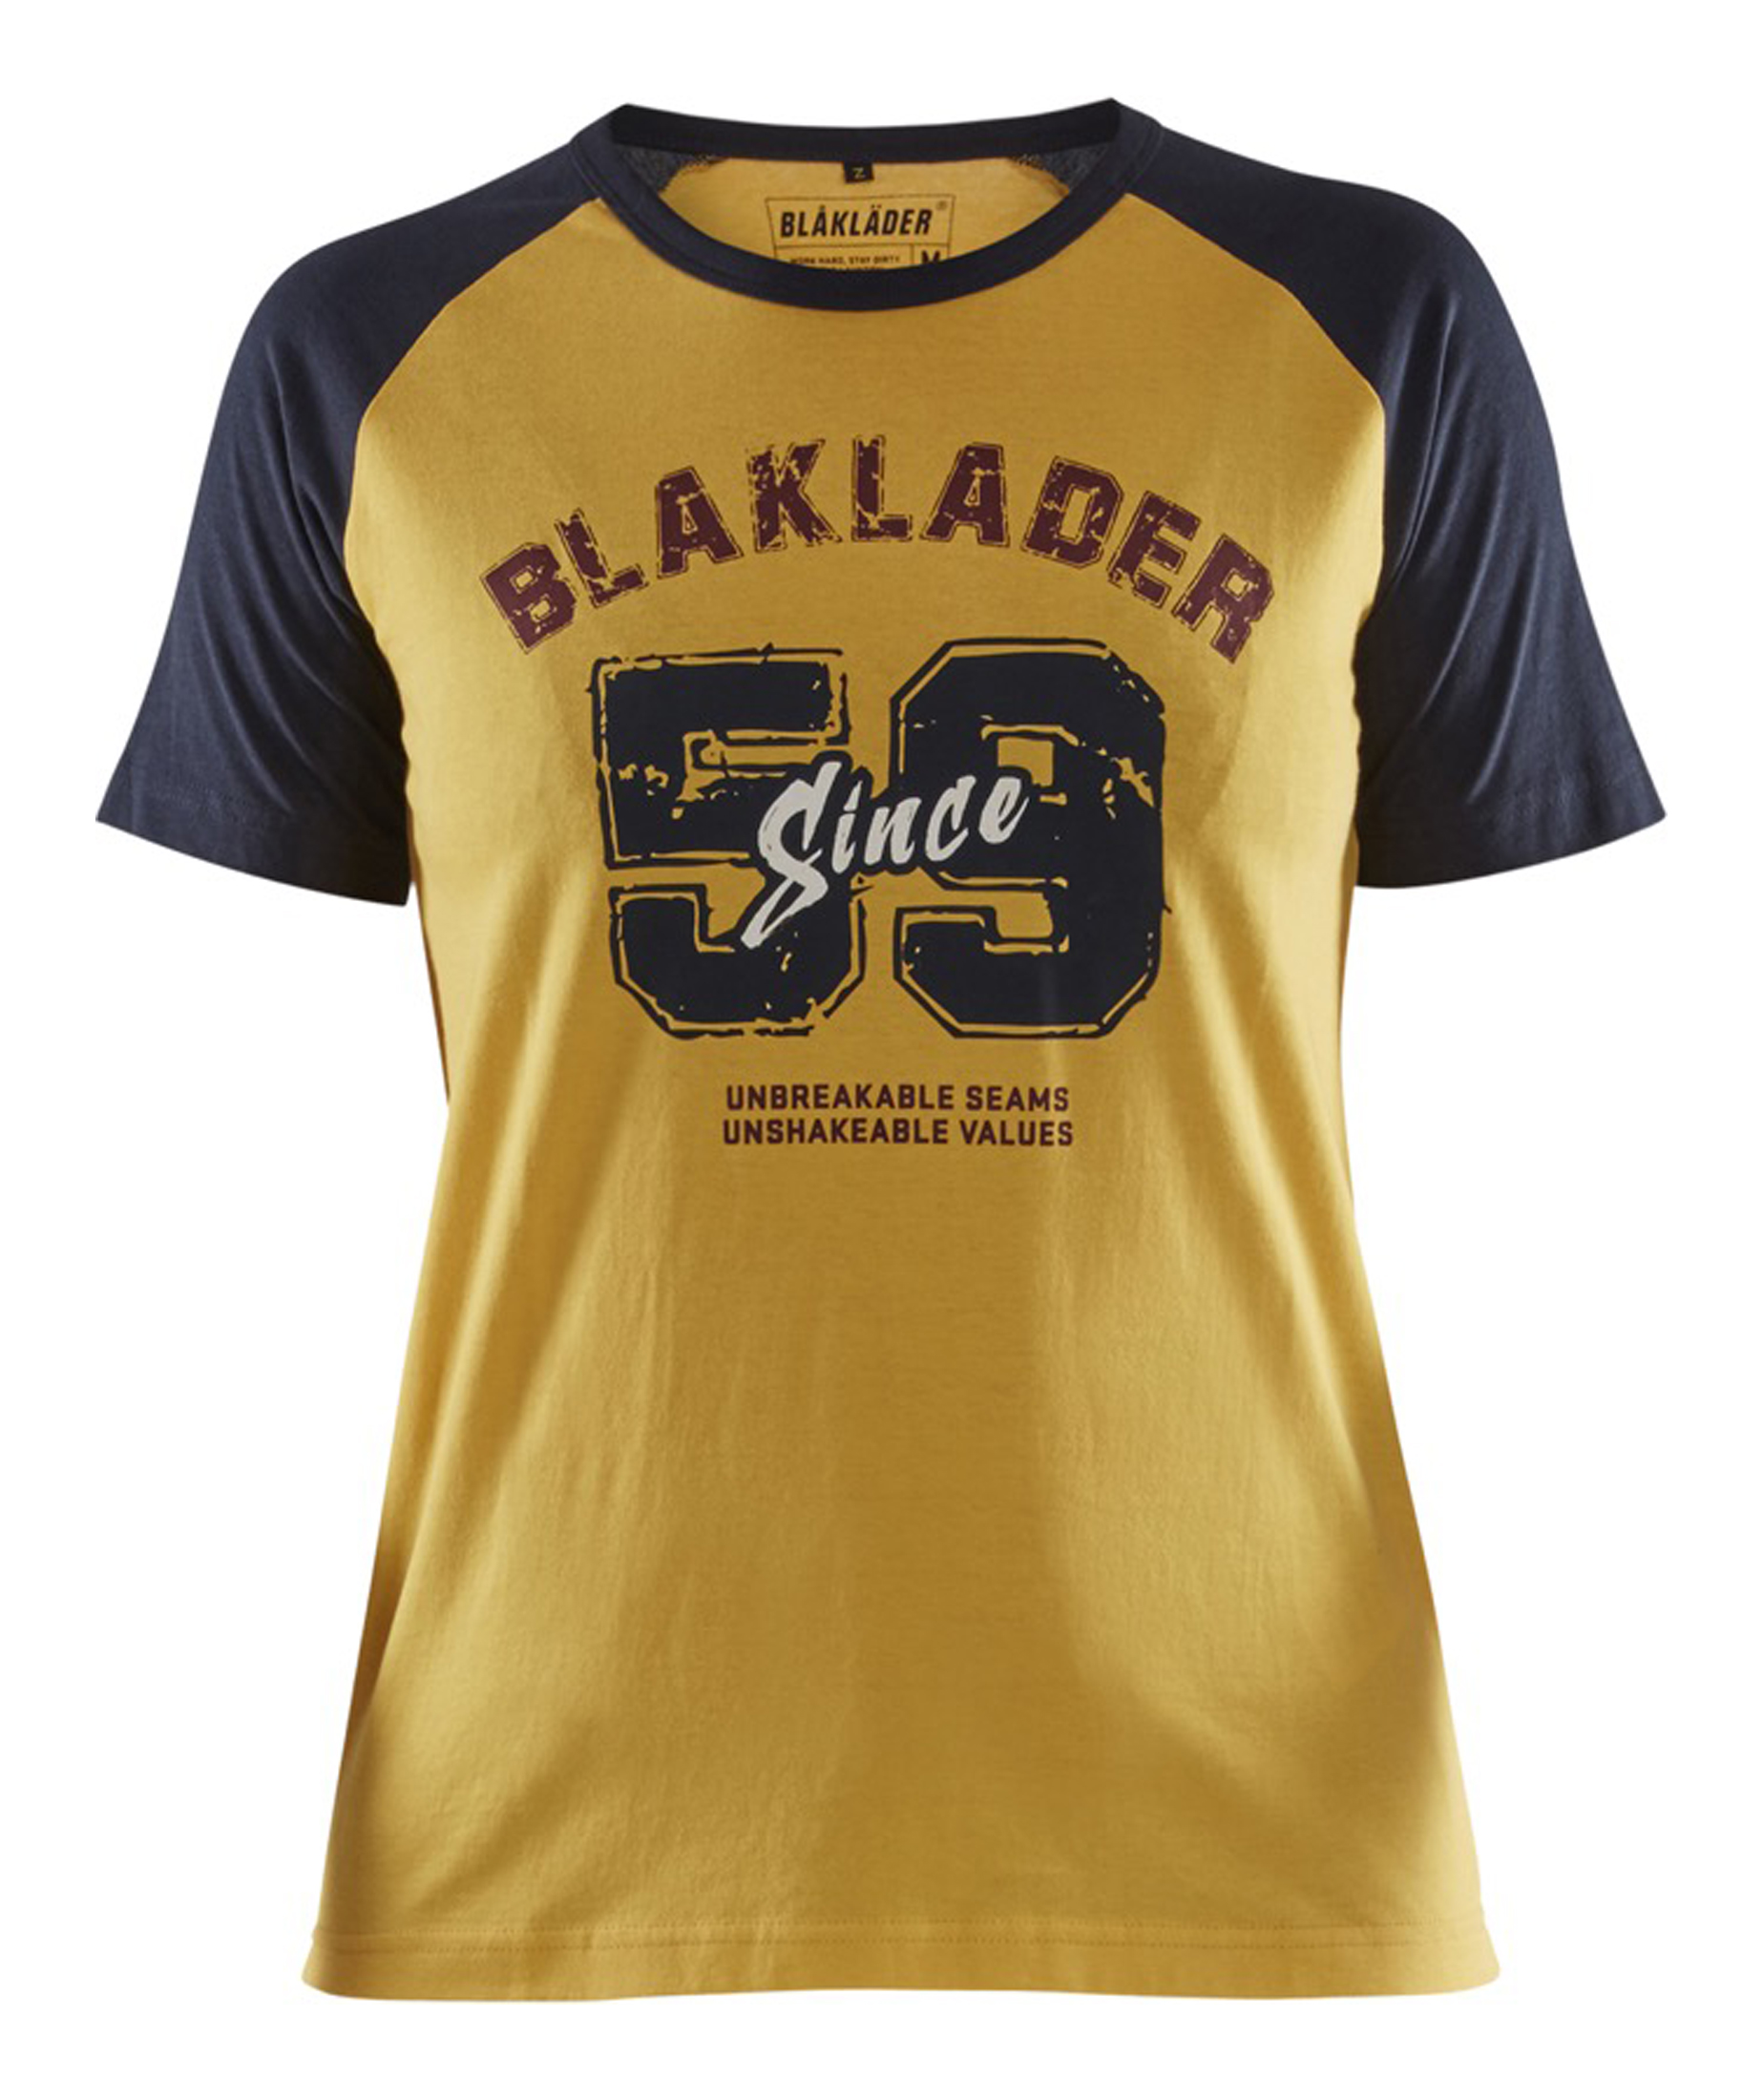 T-shirt Limited Dam Blaklader since 59 - Gul/blå